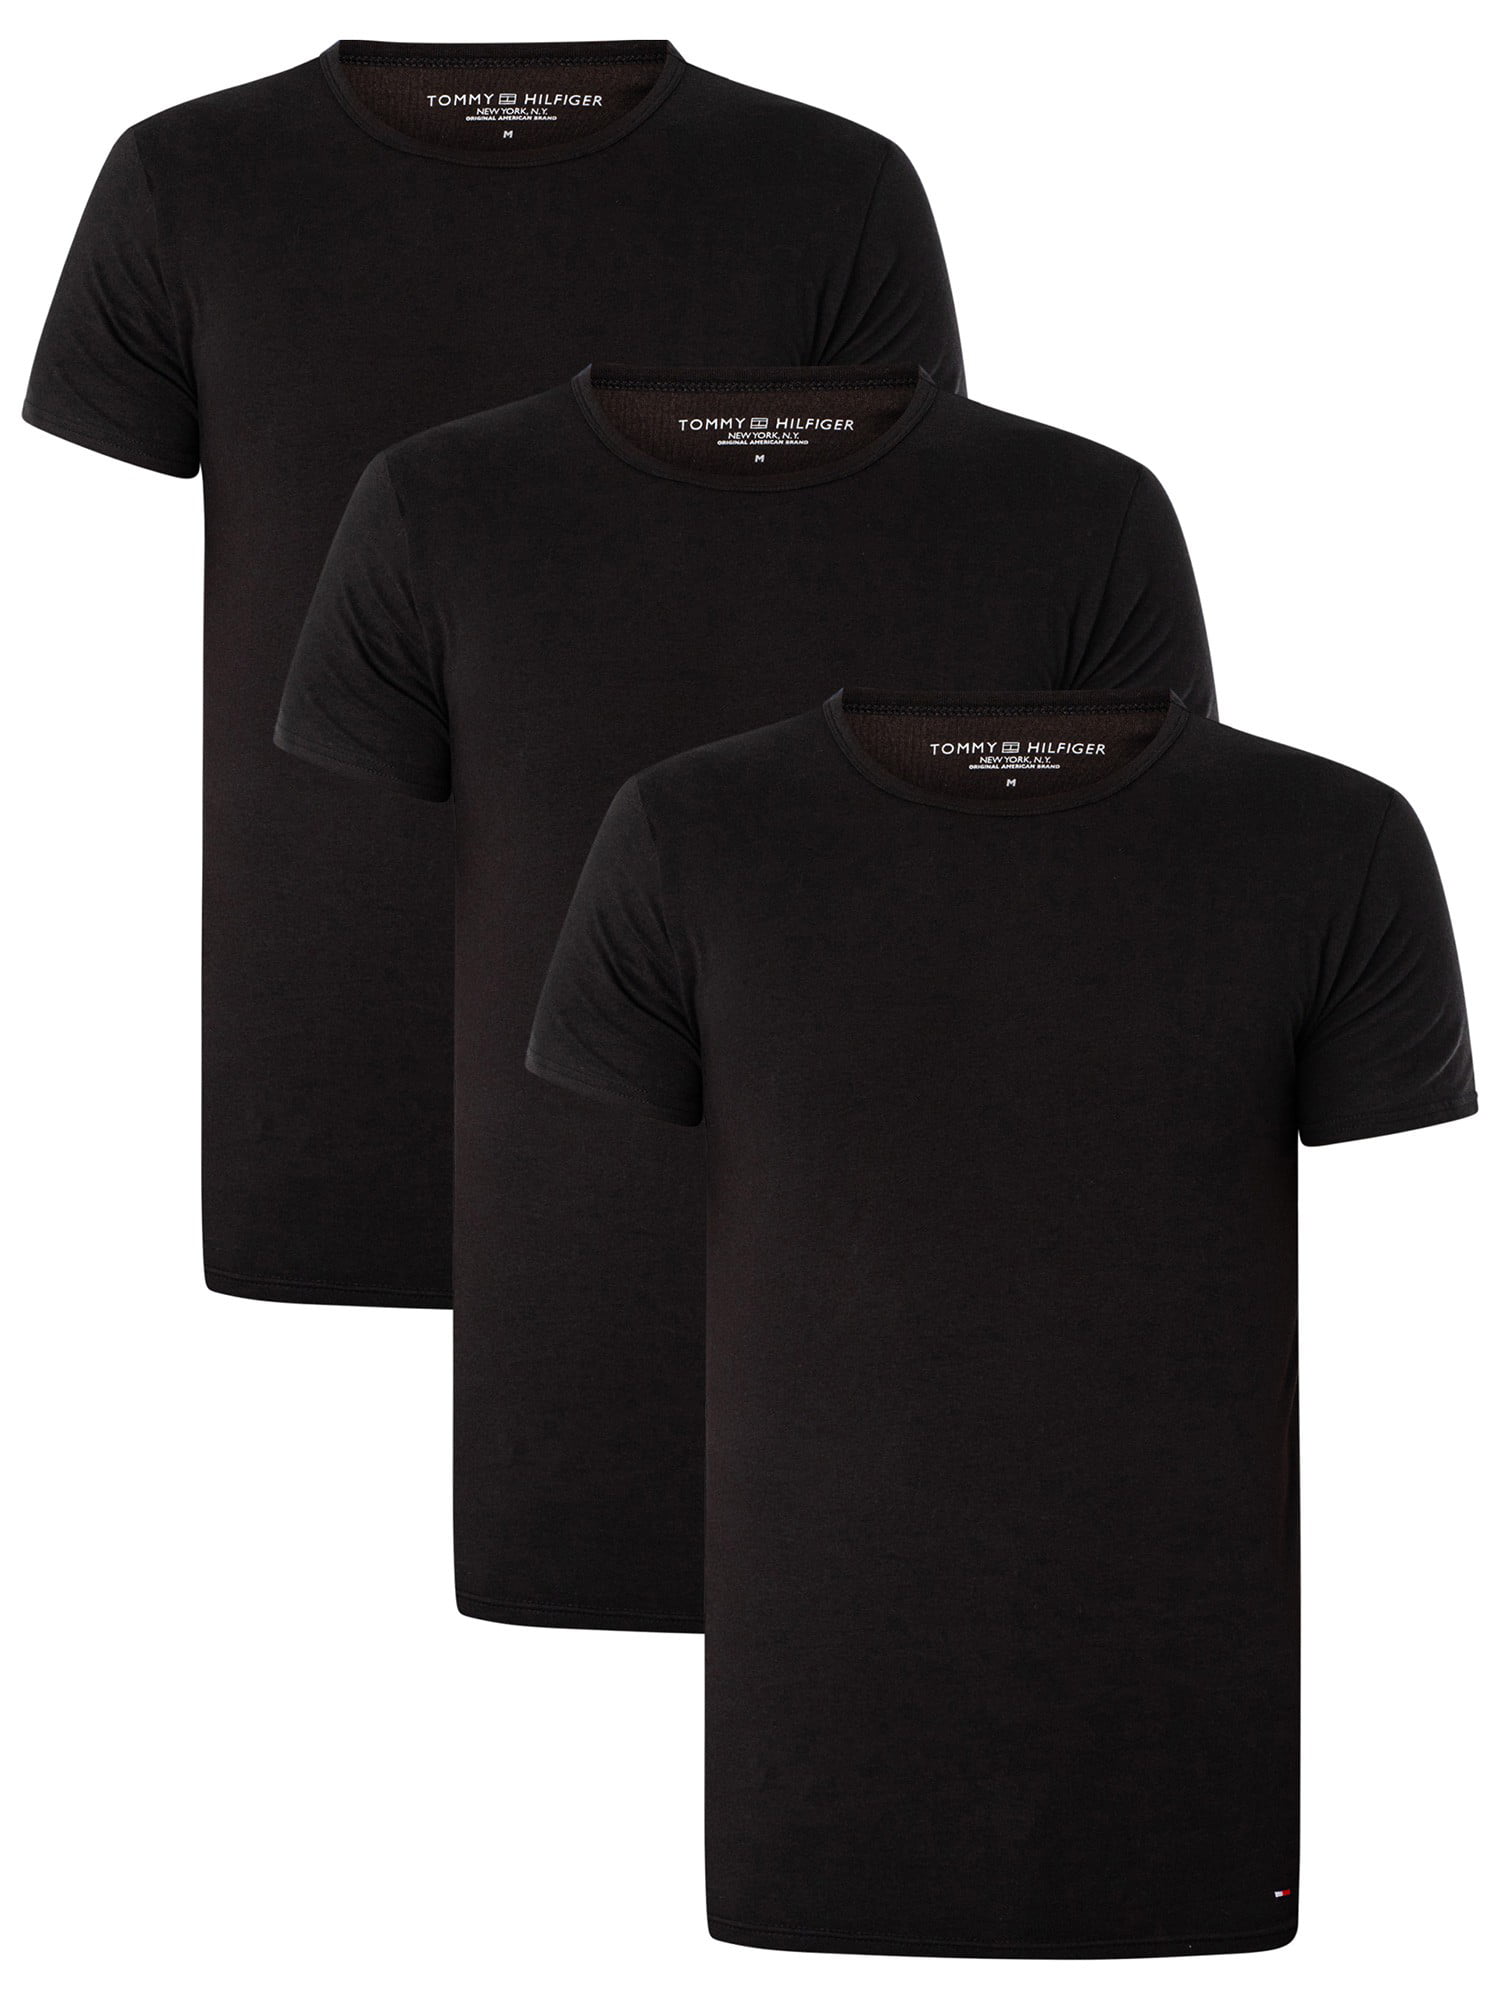 Tommy Hilfiger 3 Pack Premium Essentials T-Shirts, Black